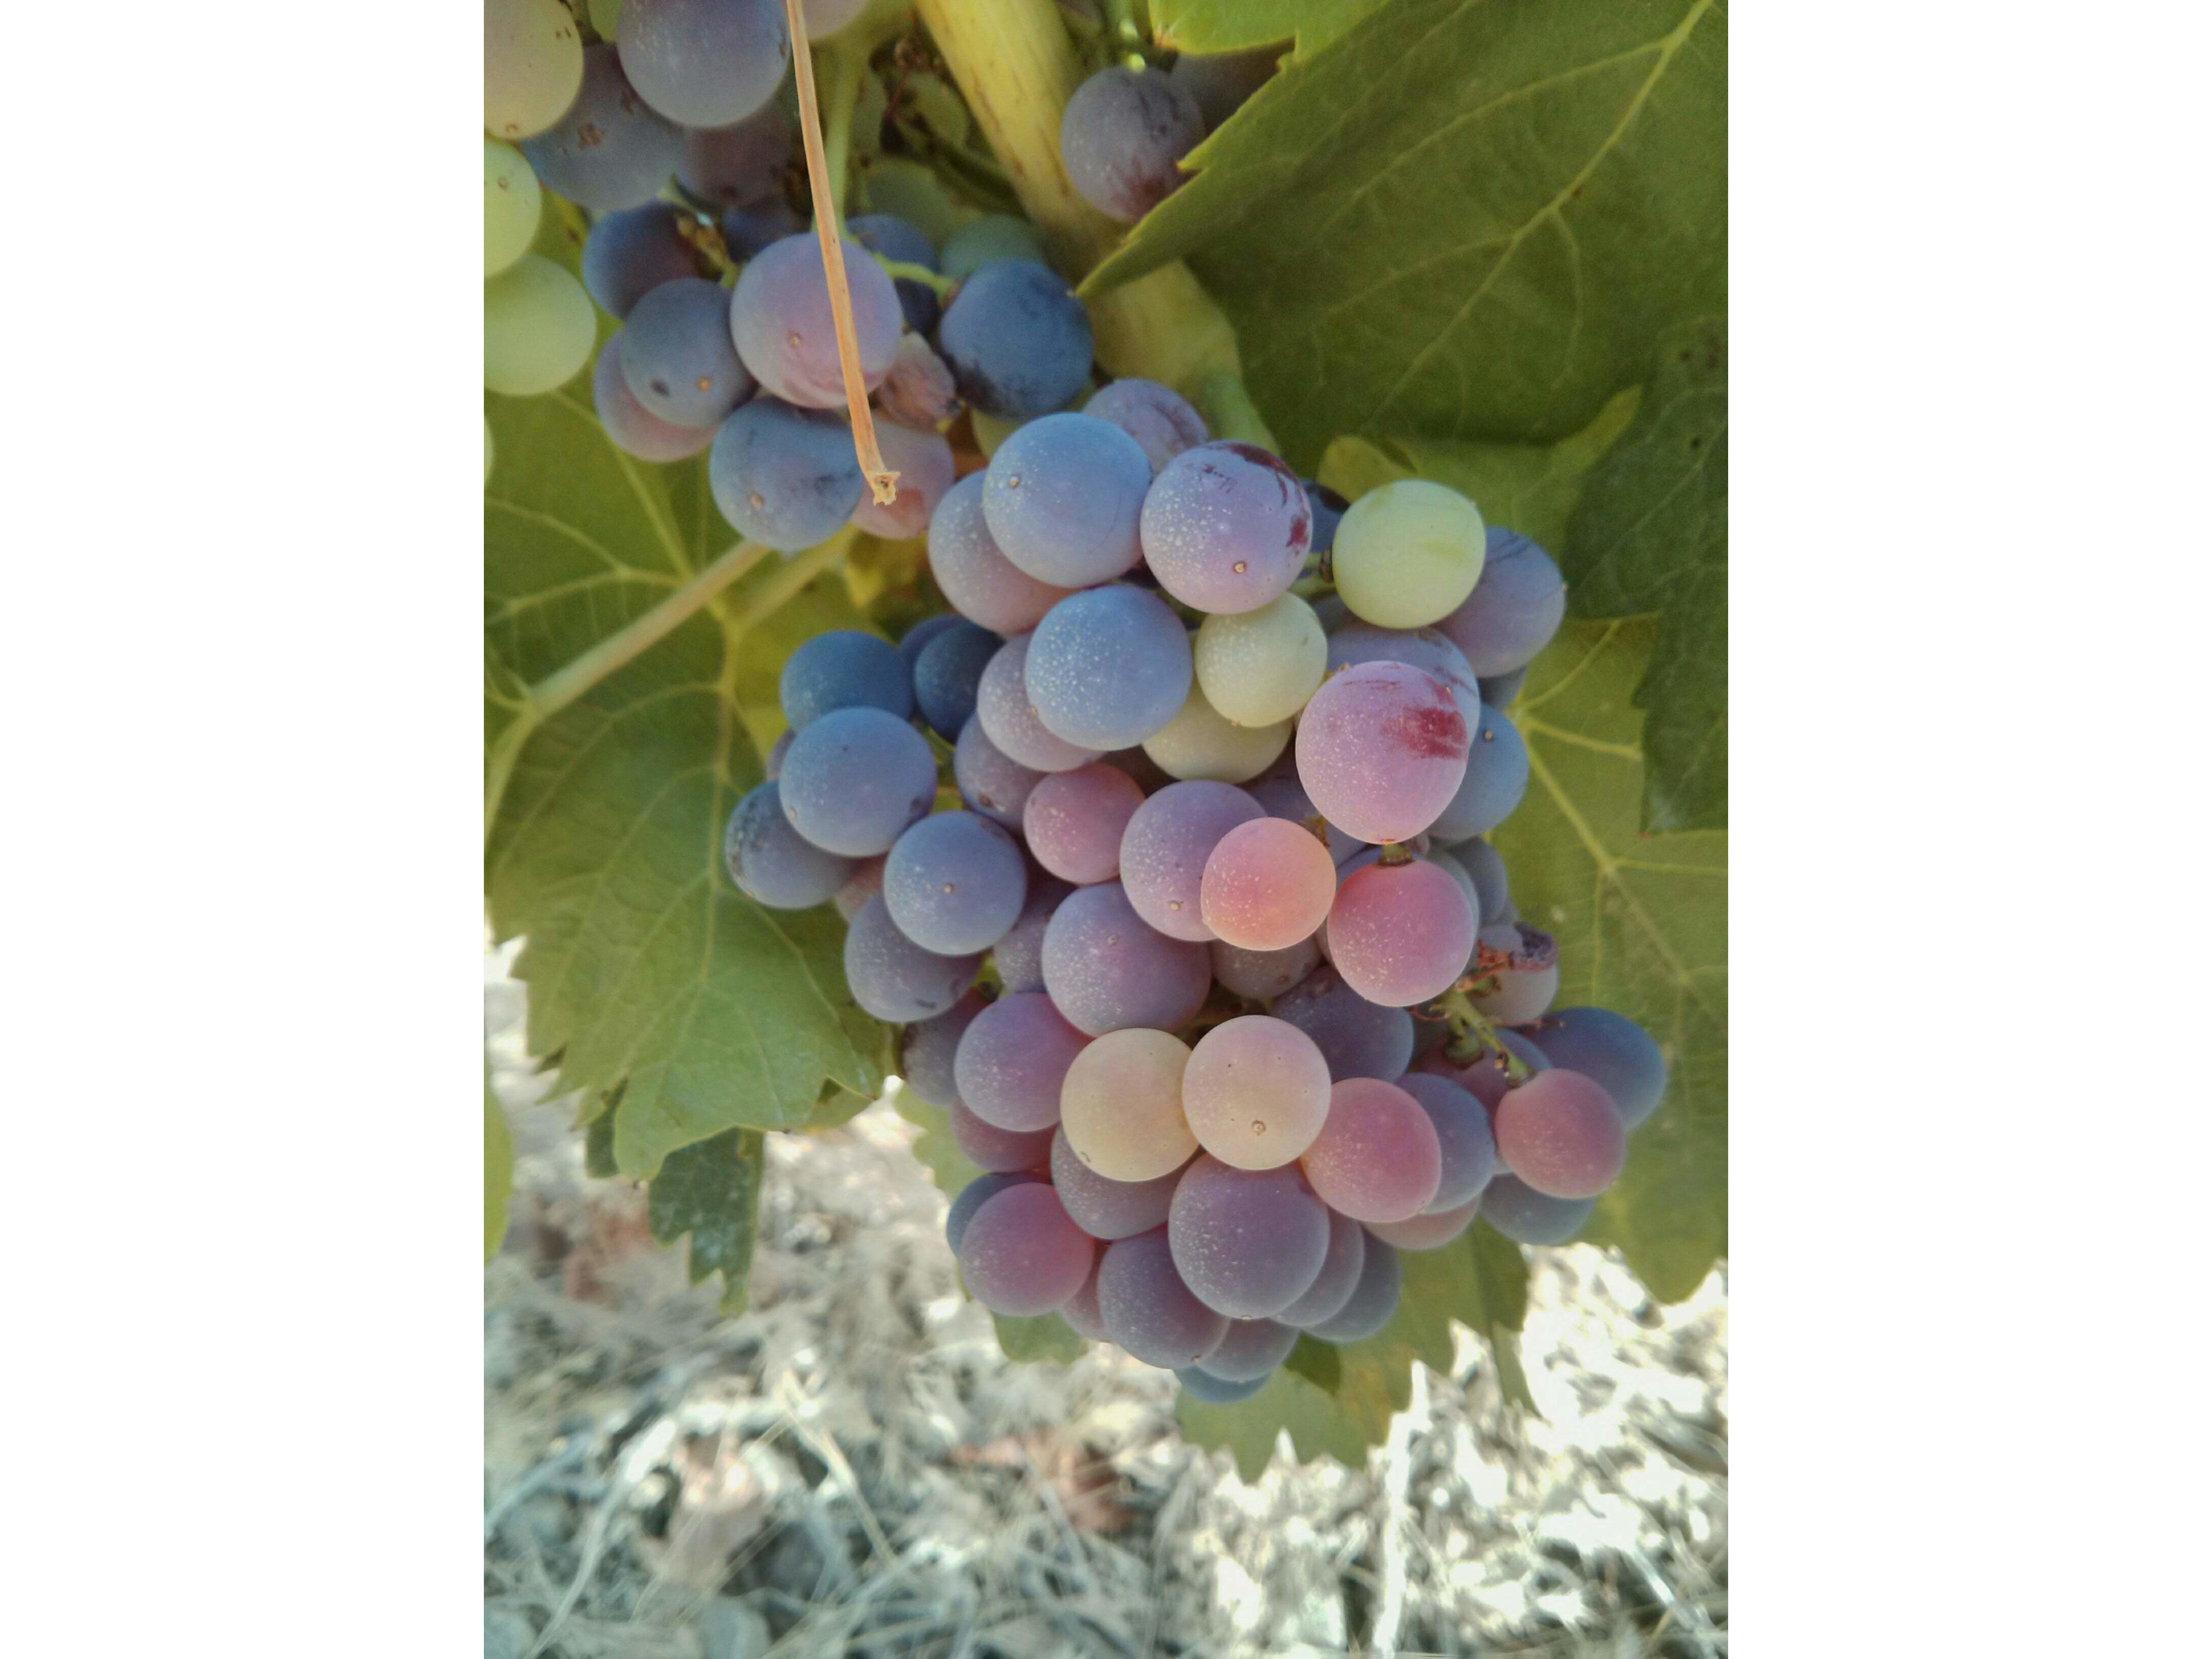 Ripening grapes